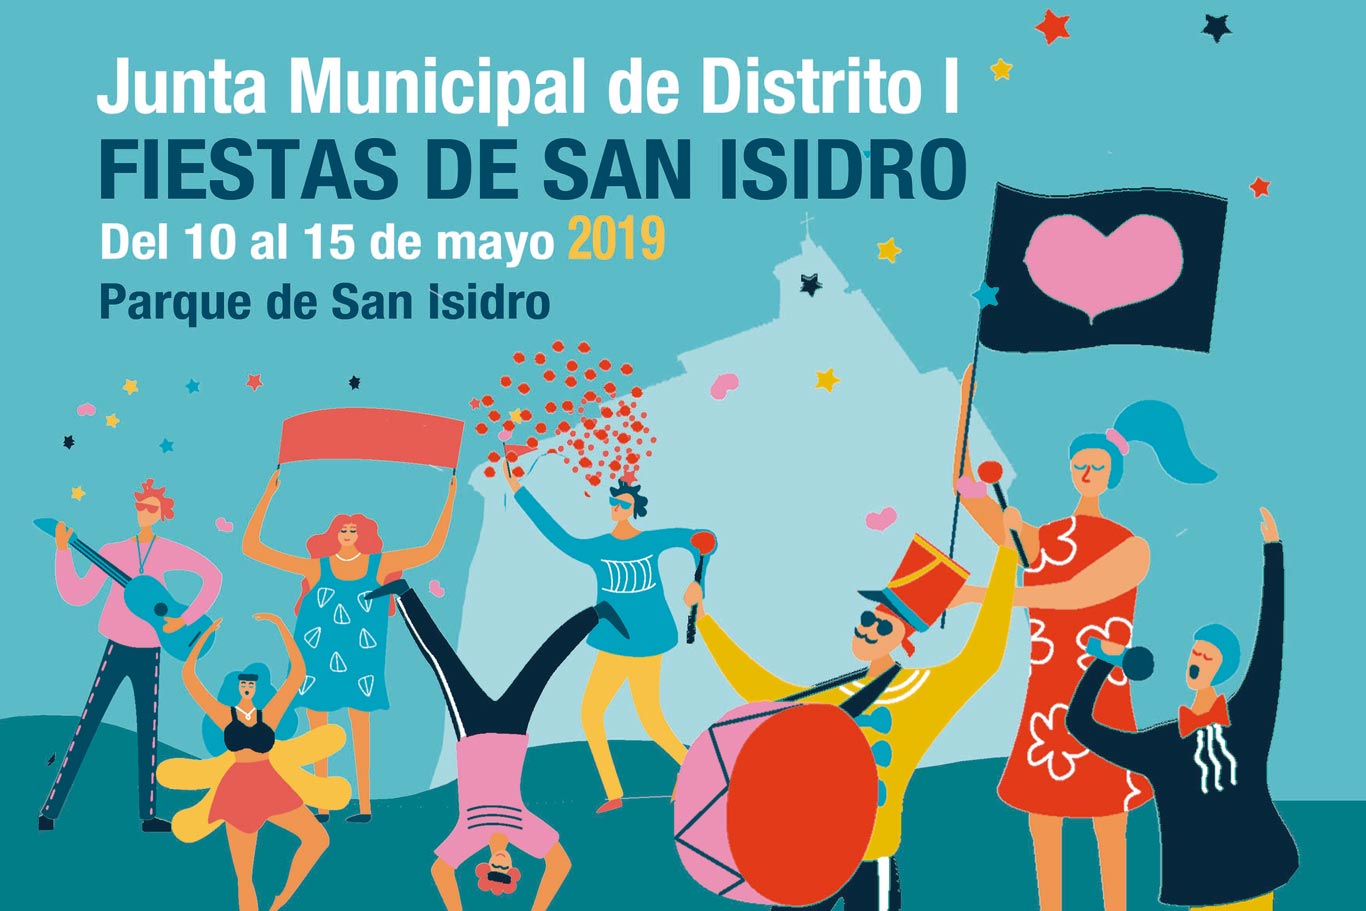 Programa las Fiestas Isidro 2019 - Dream Alcalá